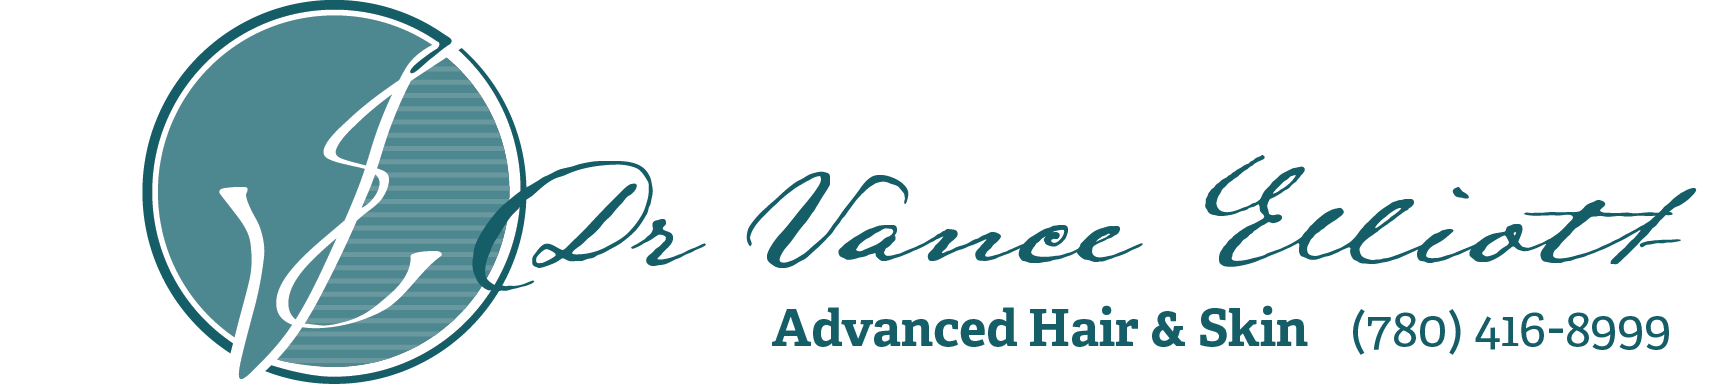 Dr Vance Elliott - Logo